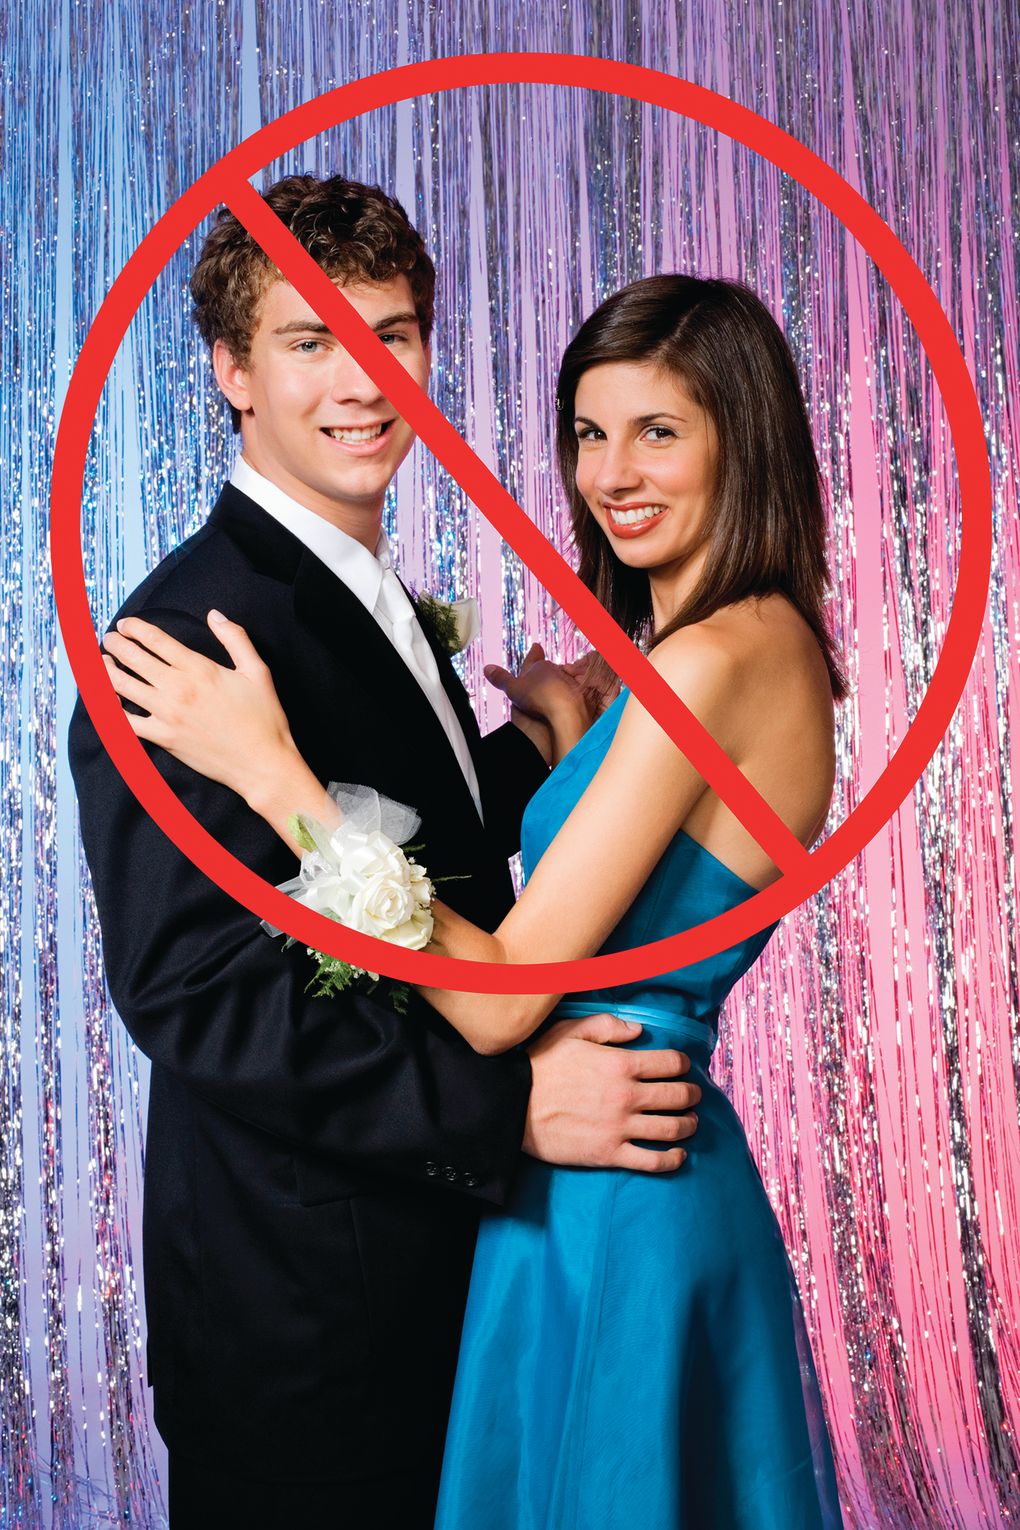 debby high share high school prom sex photos